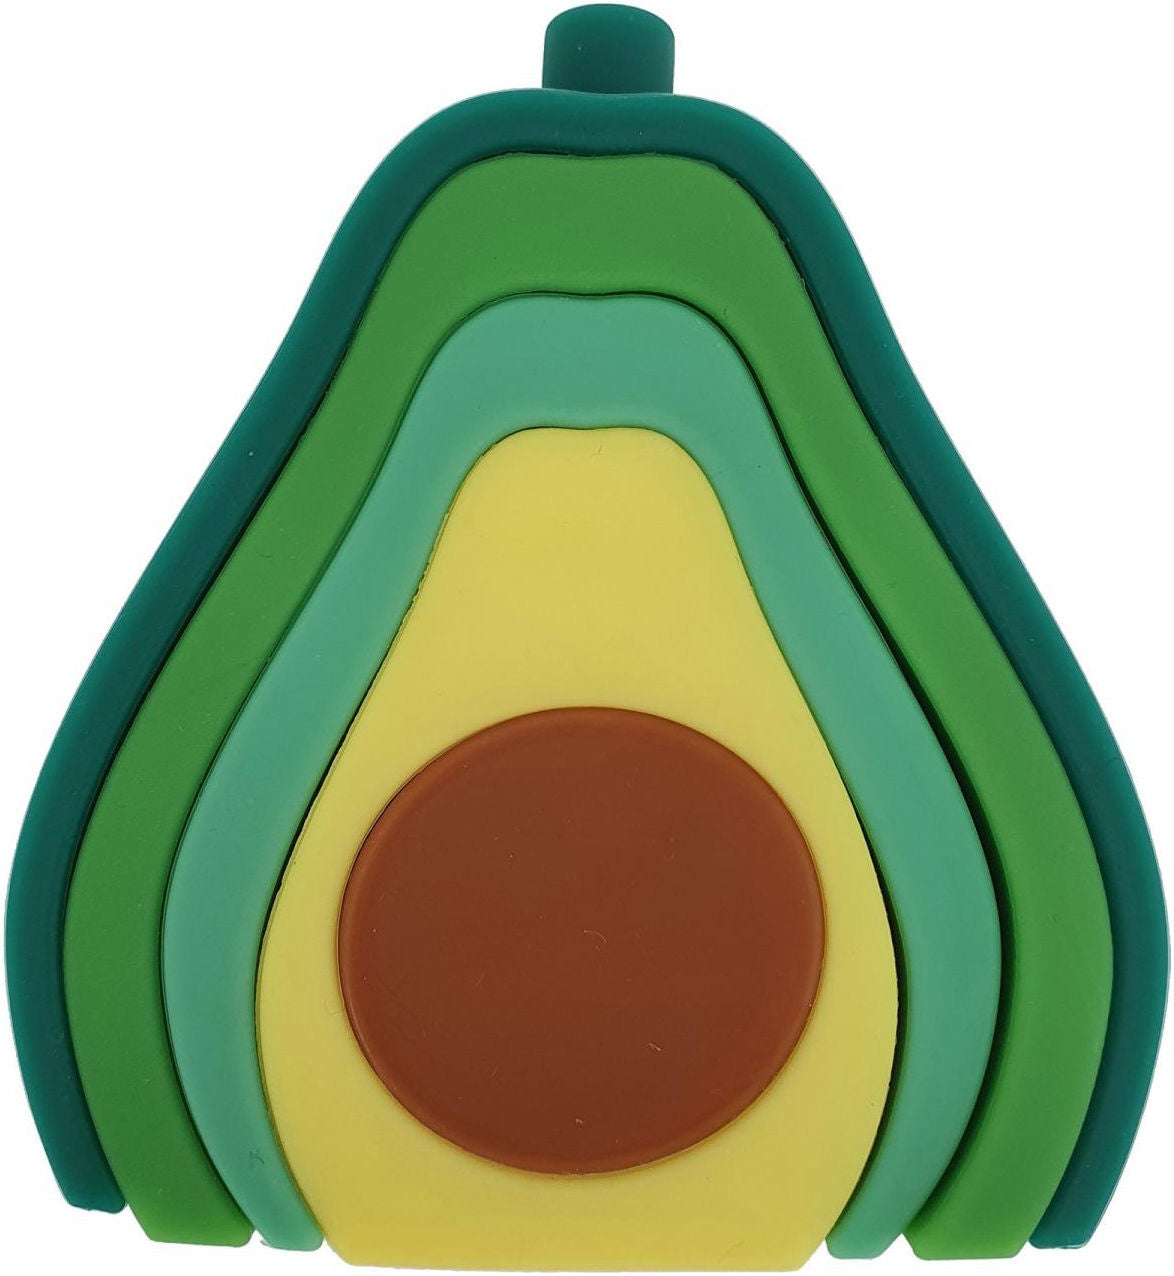 Summerville Organic Stapelspielzeug Avocado, Babyspielzeug von Summerville